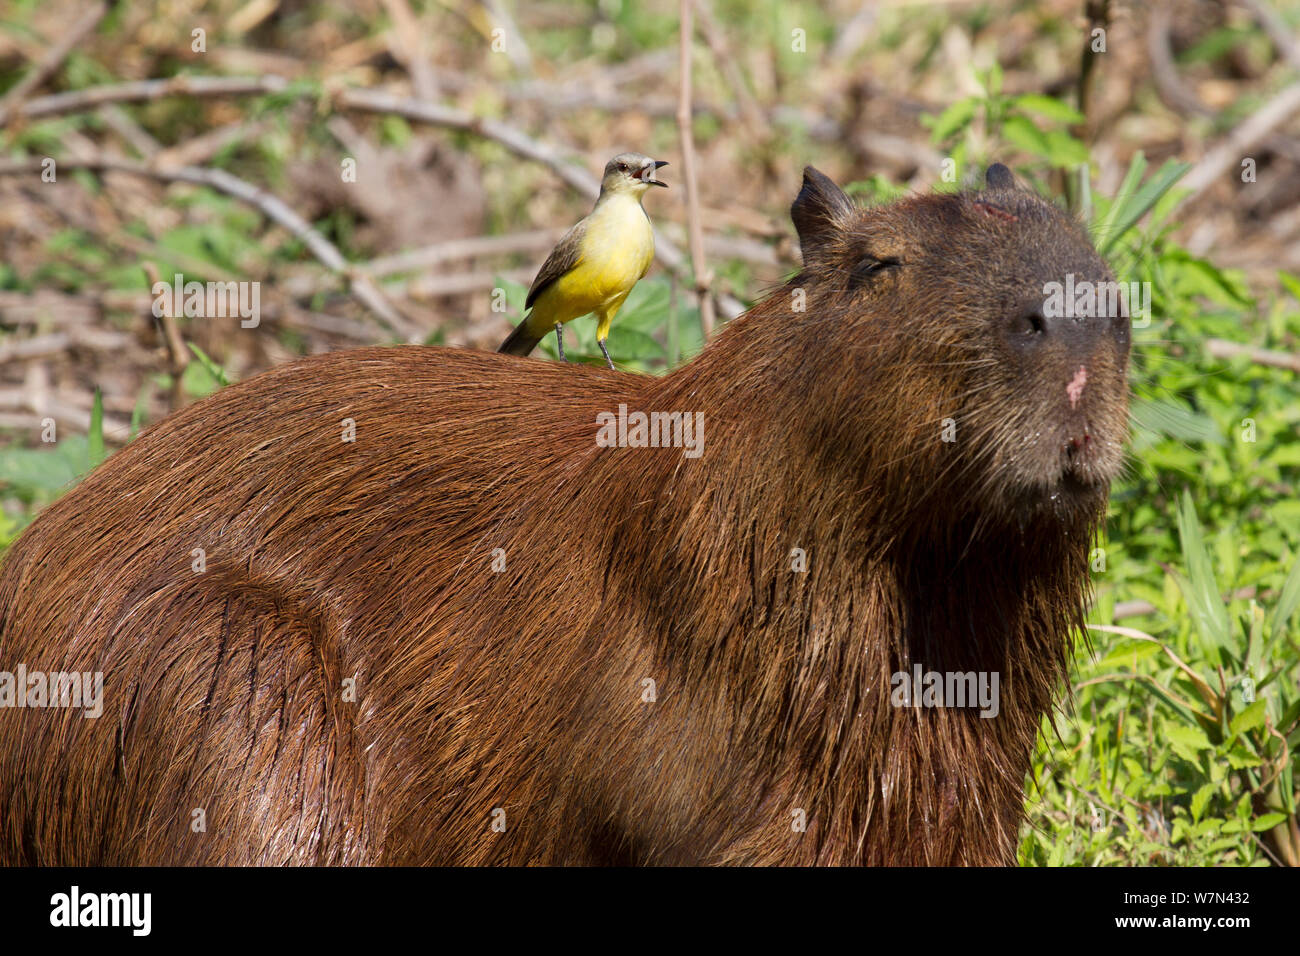 Los capibaras (Hydrochoerus hydrochaeris) con ganado tirano (Machetornis rixosa) pájaro sobre su vuelta en busca de insectos para alimentarse, Pantanal, Pocone, Brasil Foto de stock